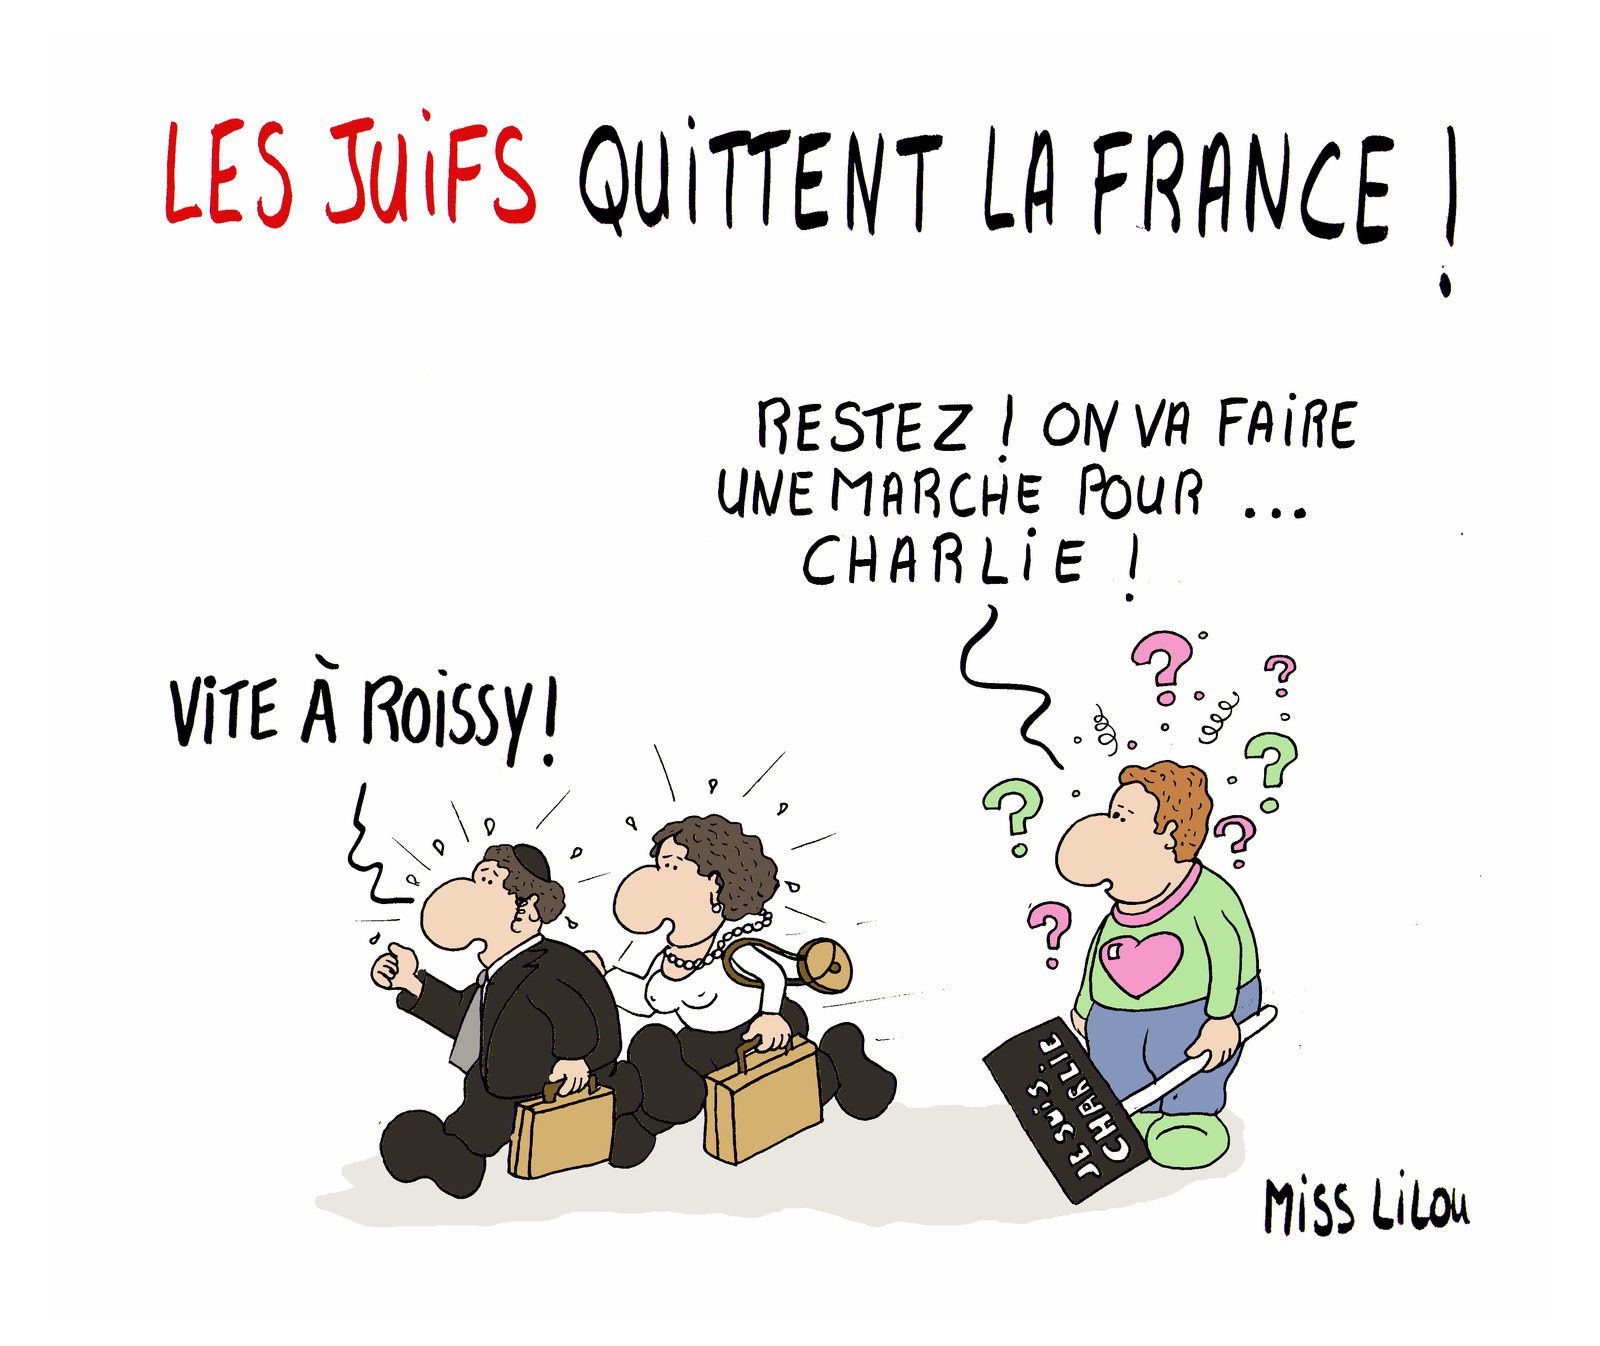 LES JUIFS QUITTENT LA FRANCE !